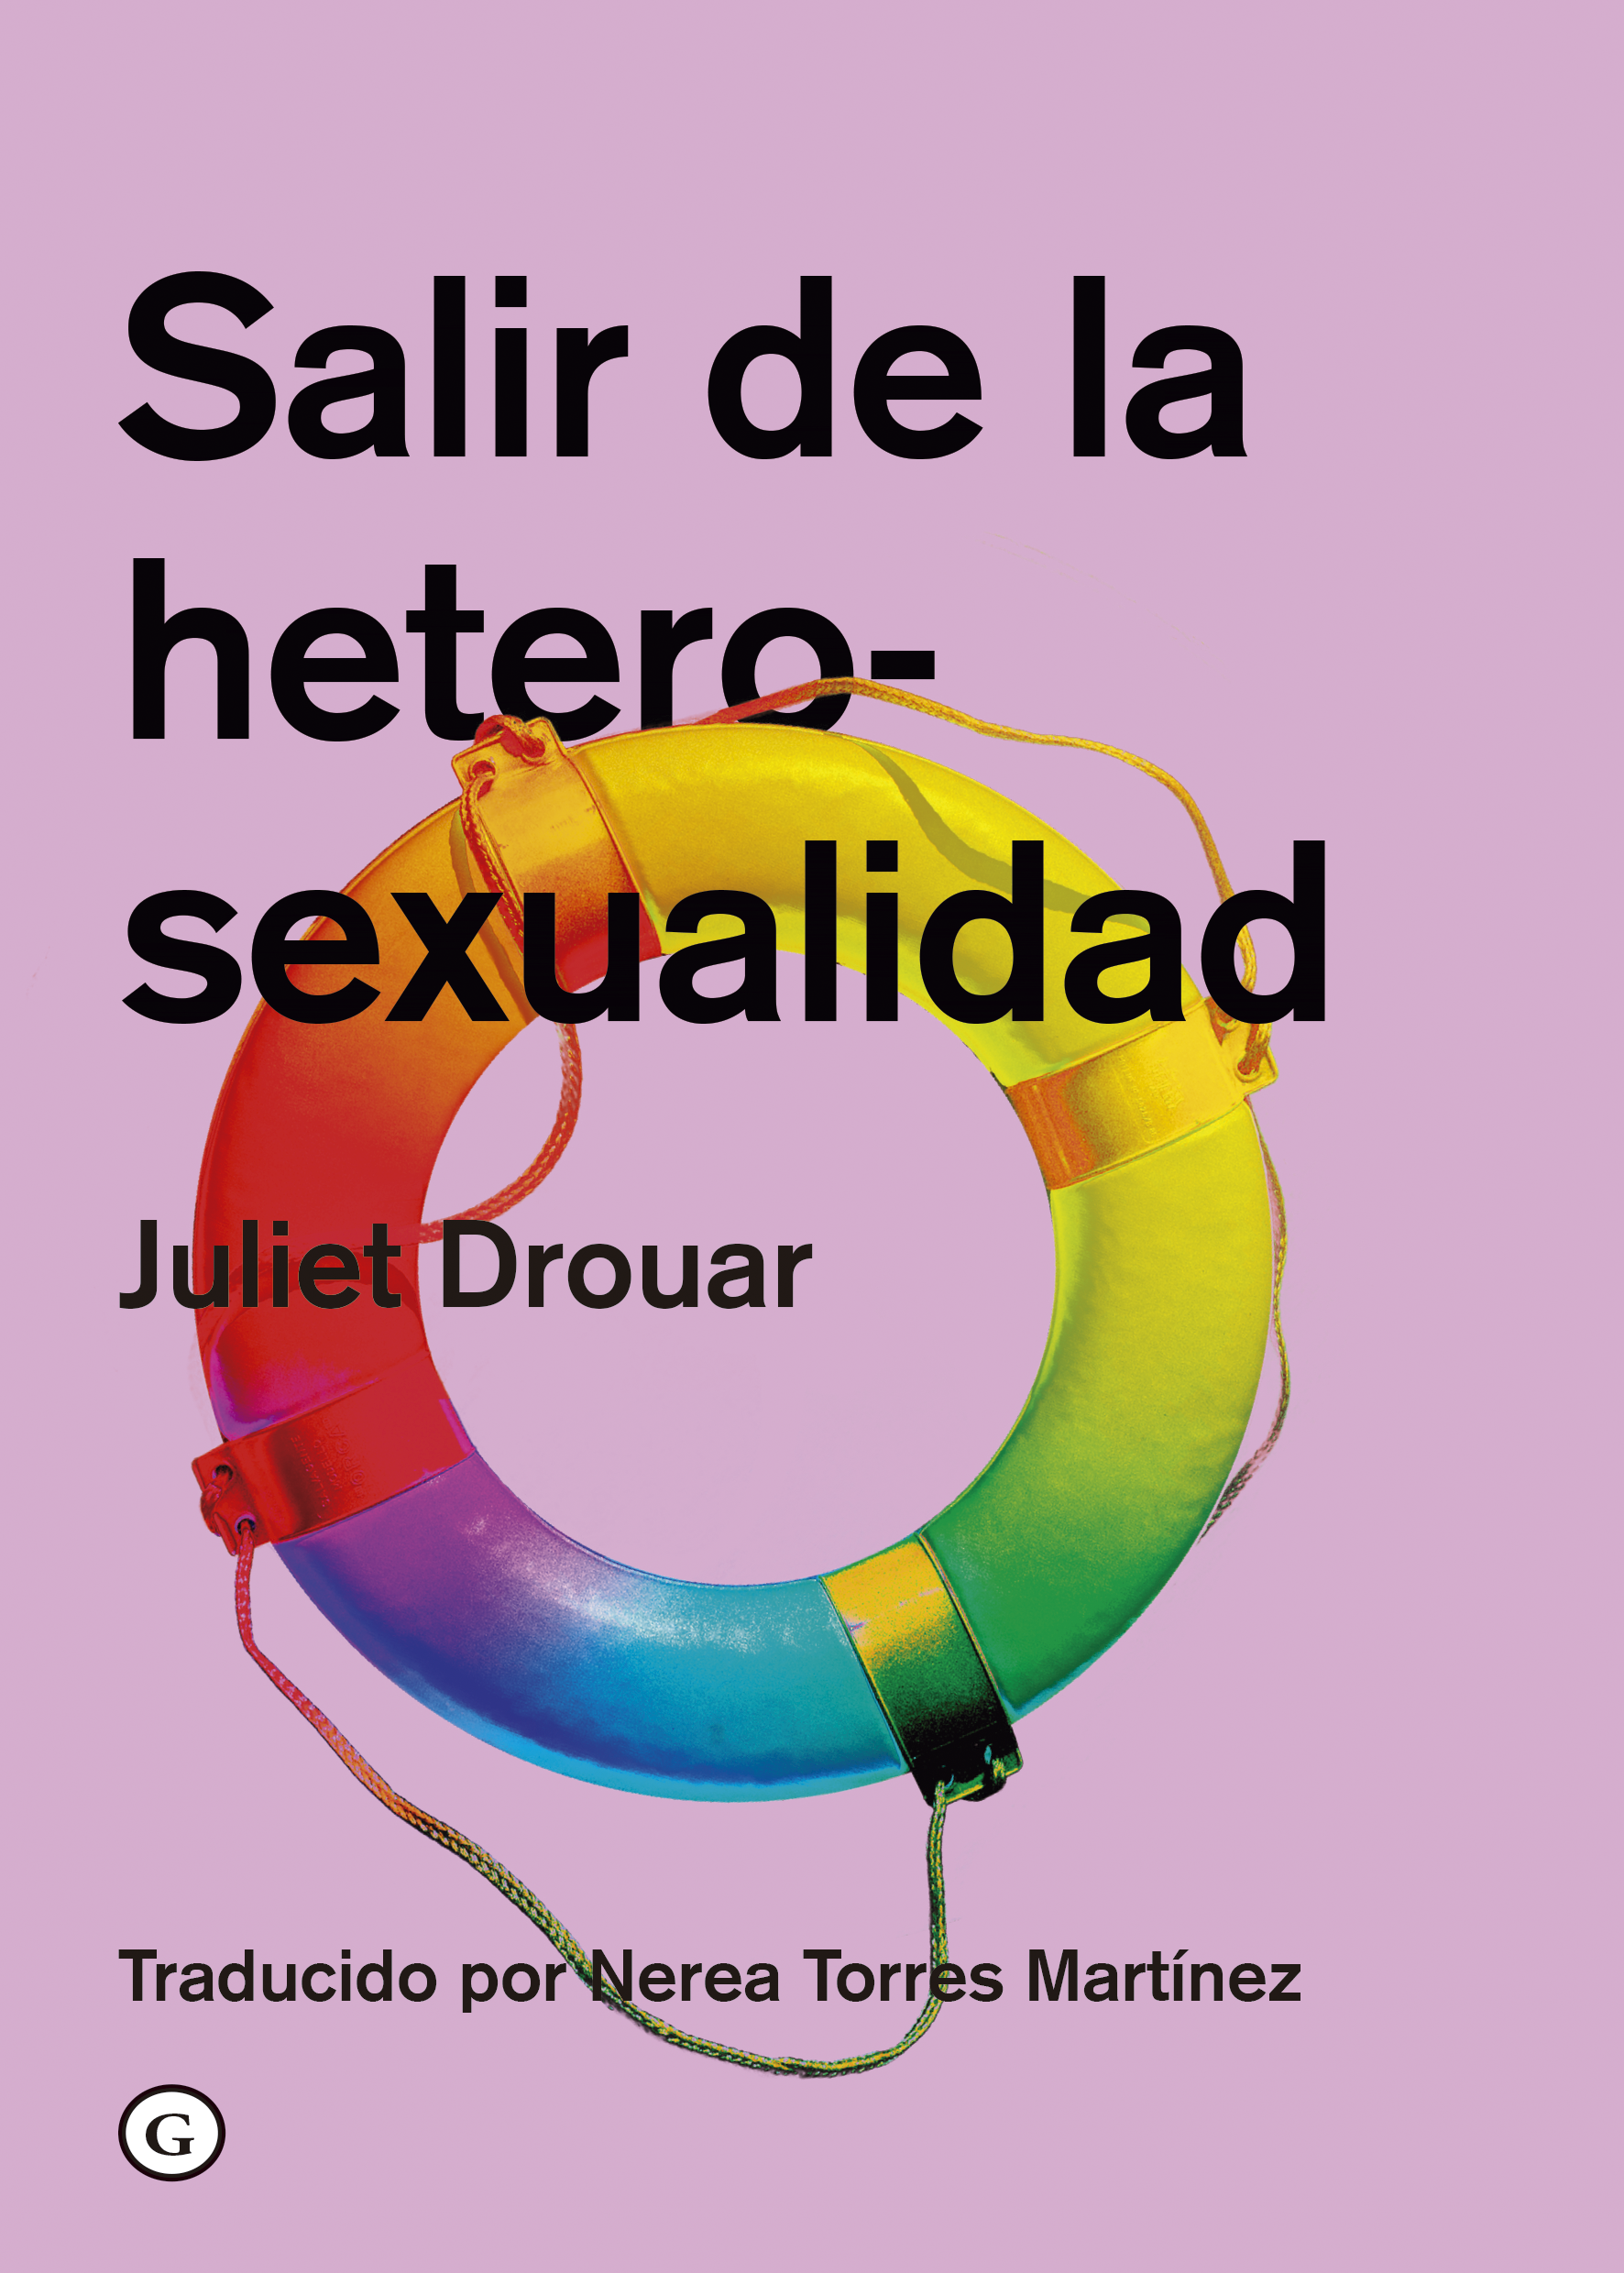 SALIR DE LA HETEROSEXUALIDAD - Juliet Drouar